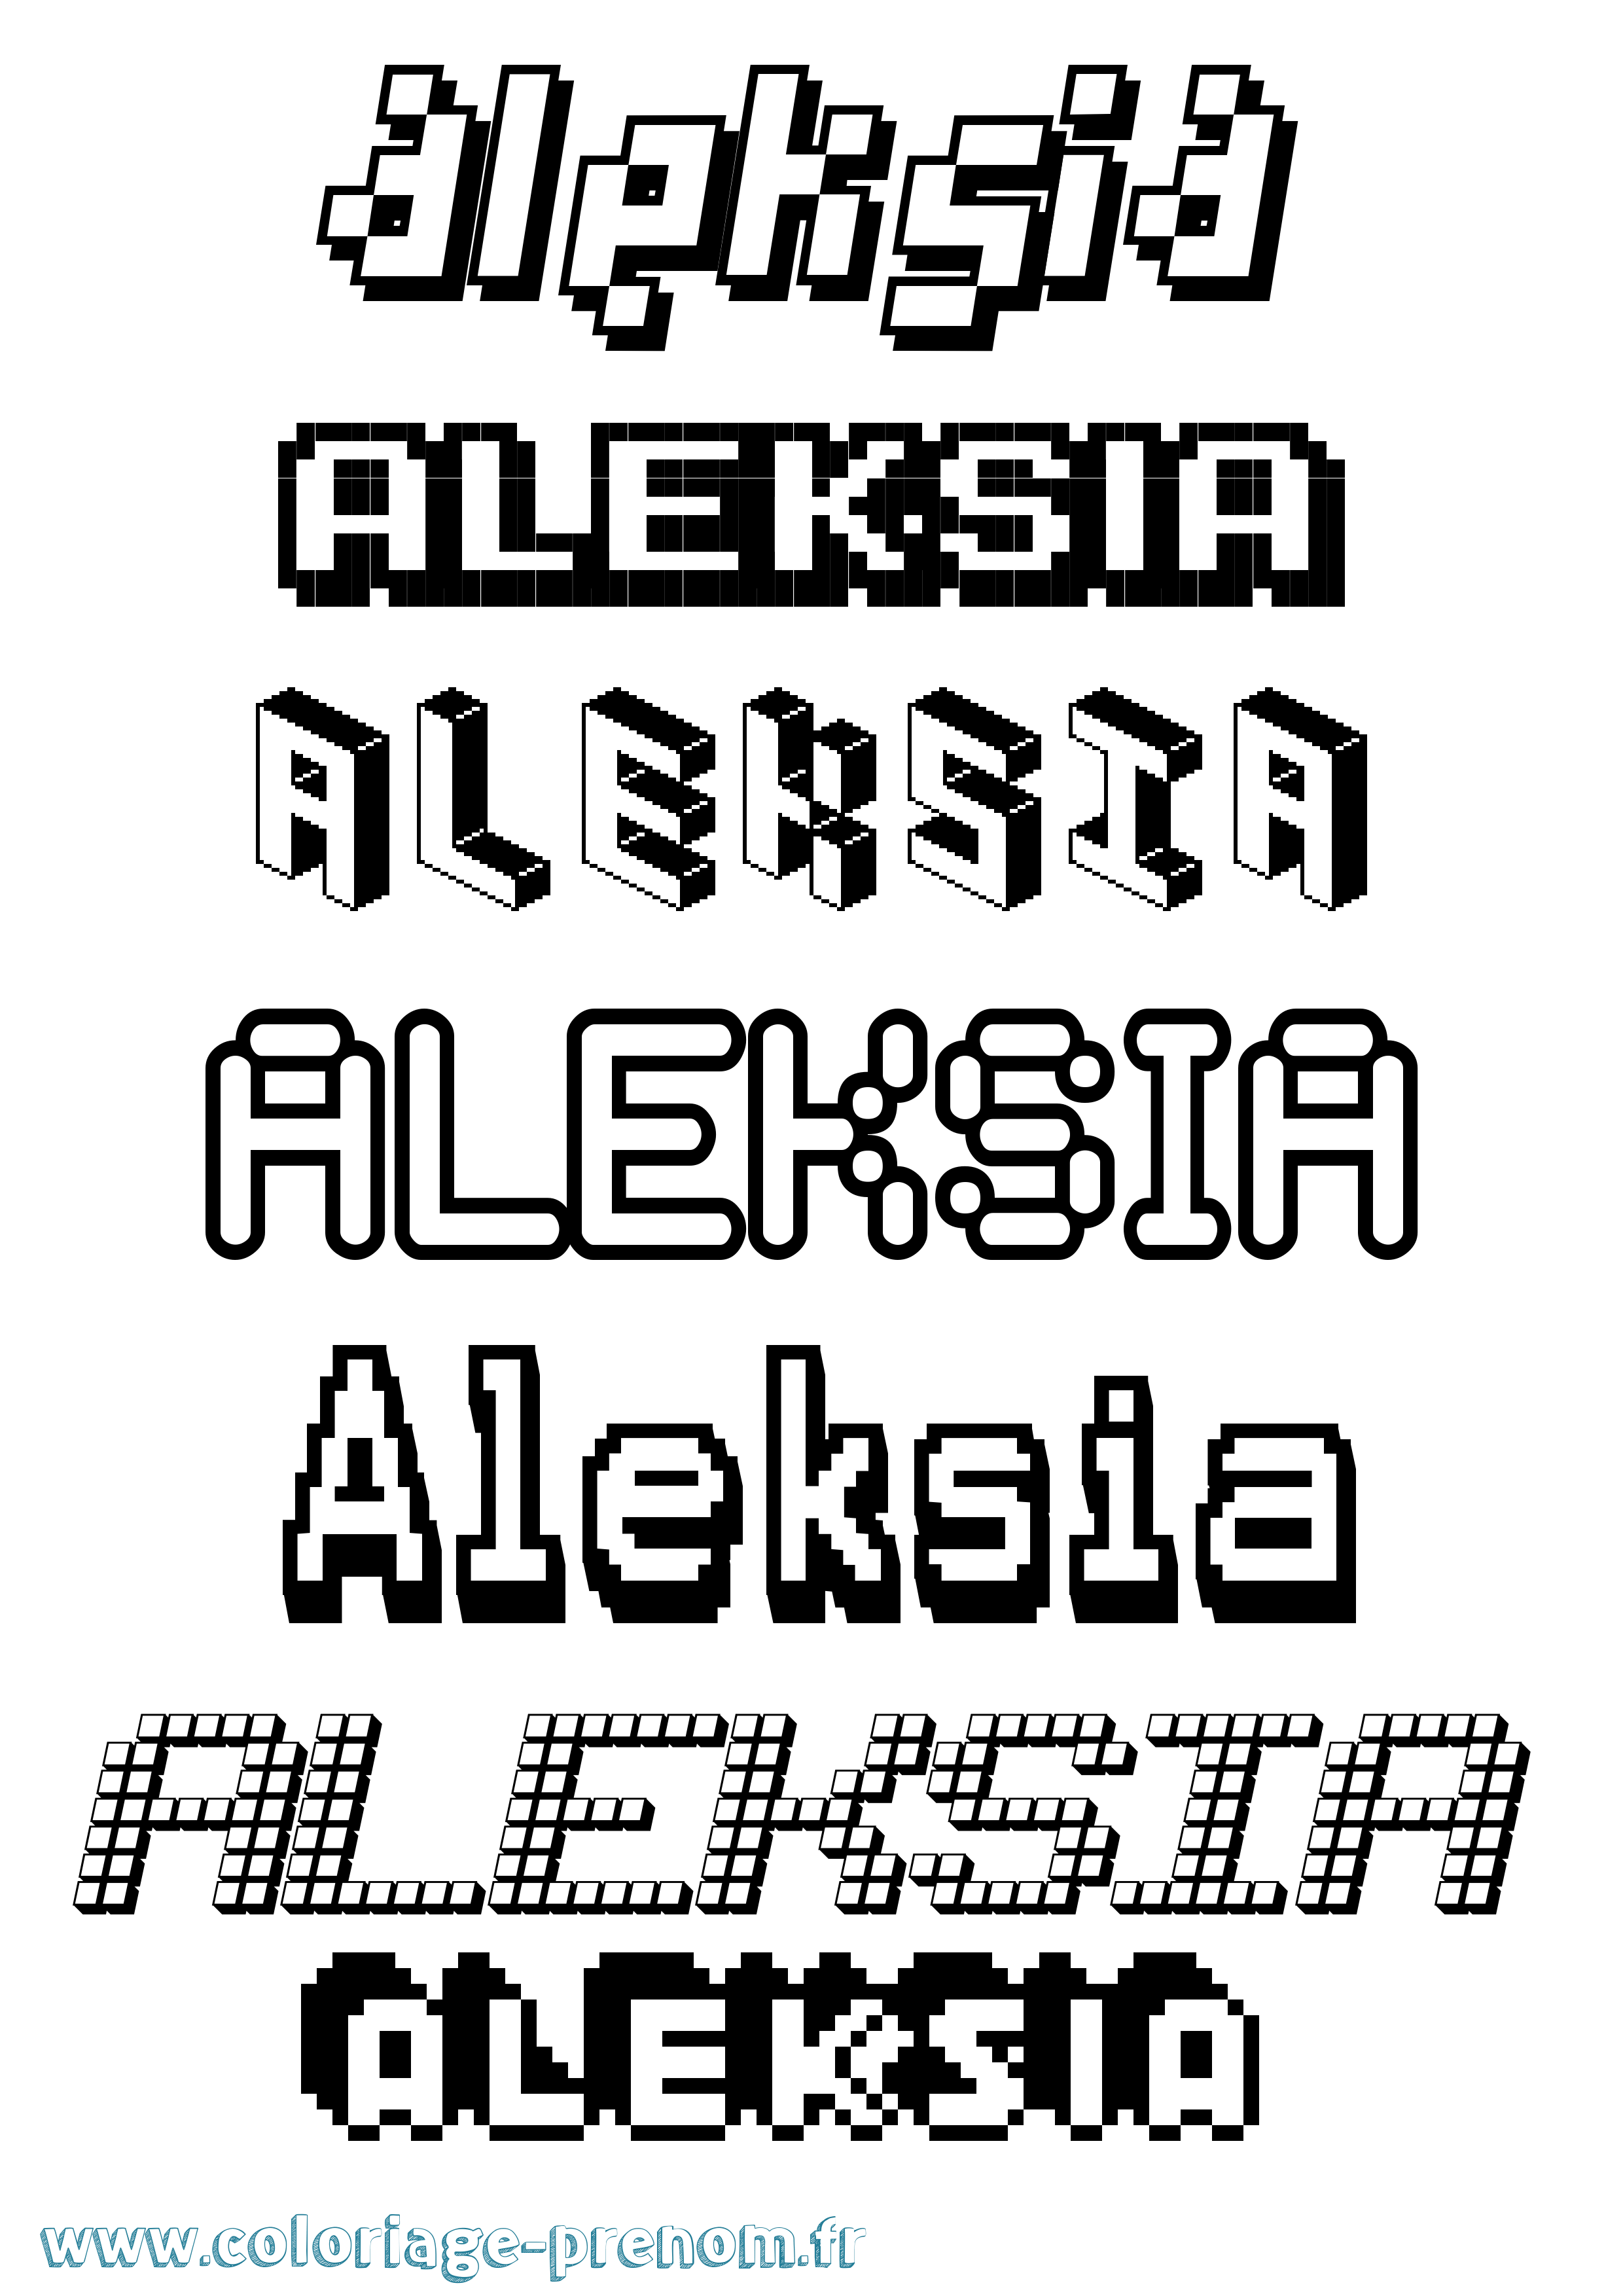 Coloriage prénom Aleksia Pixel